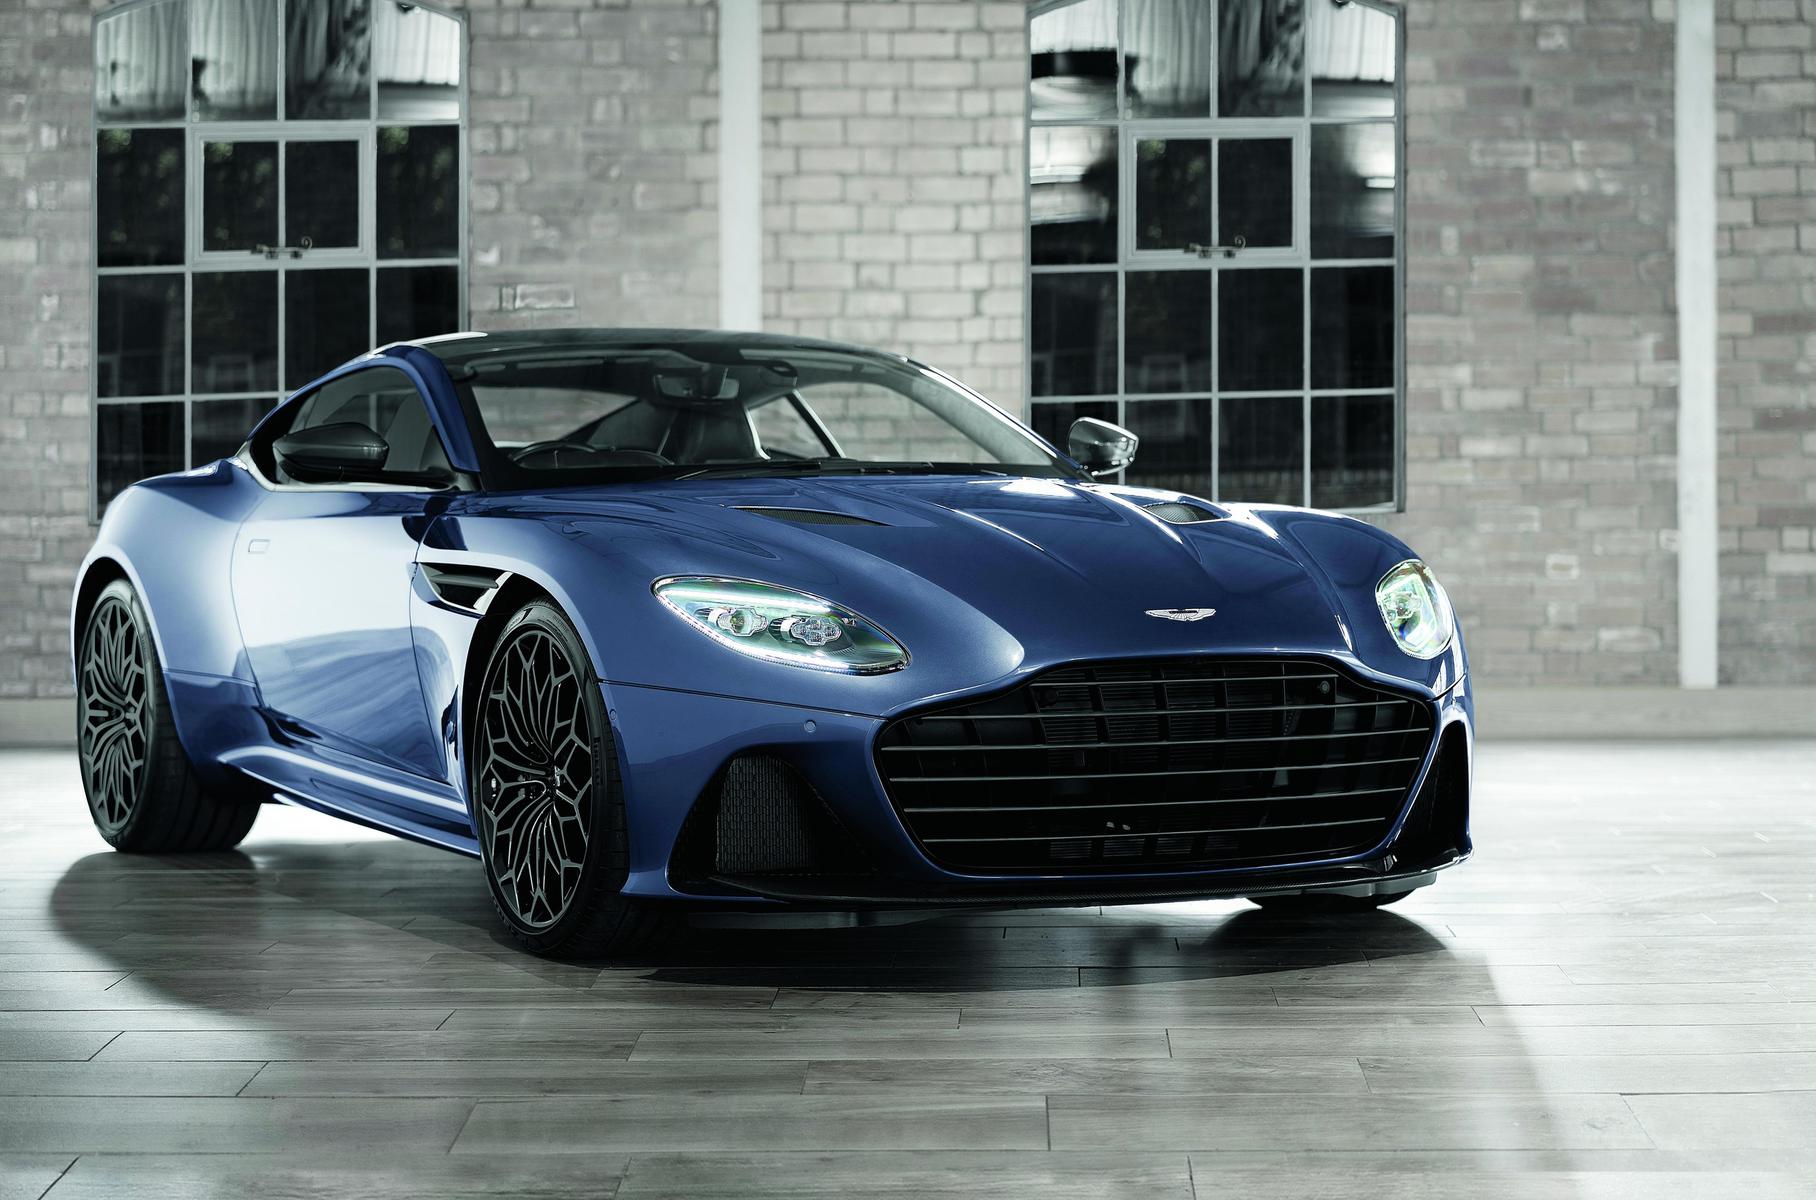 Aston Martin rabotaet nad kamerami zadnego vida novogo pokoleniya 1